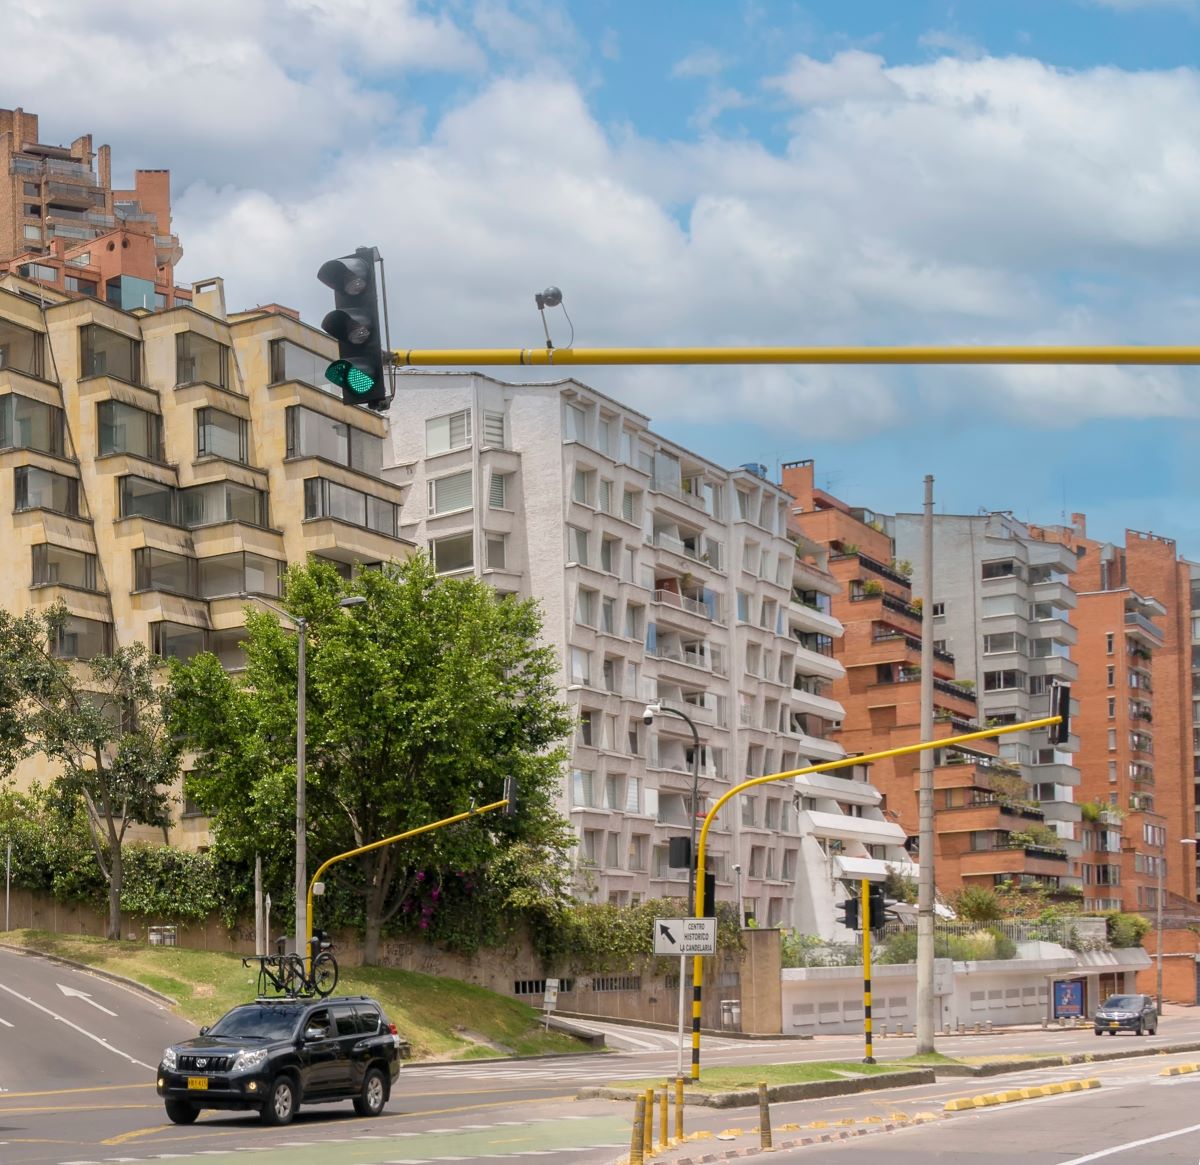 Apartamentos, en nota sobre las localidades de Bogotá más apetecidas para arrendar vivienda